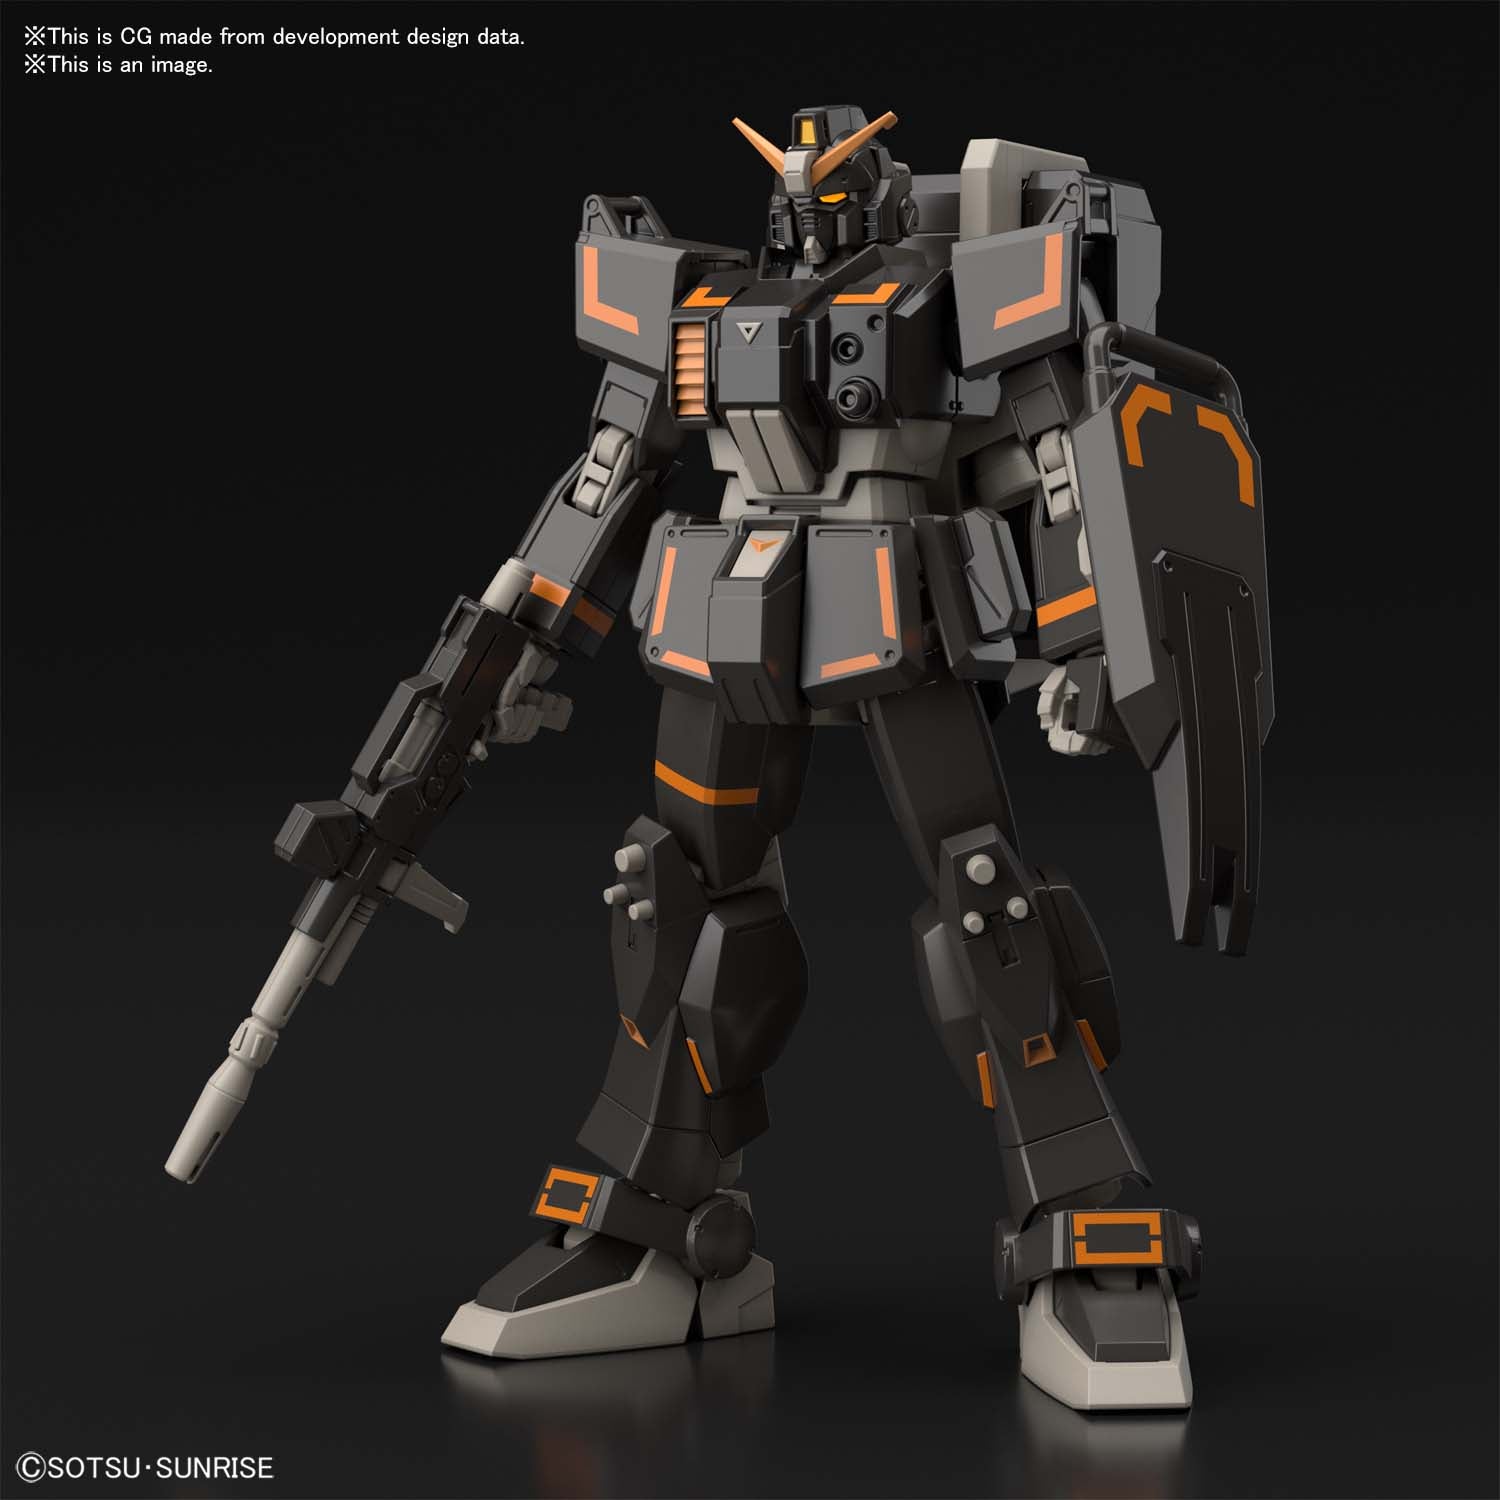 HG Gundam Ground Urban Combat Type